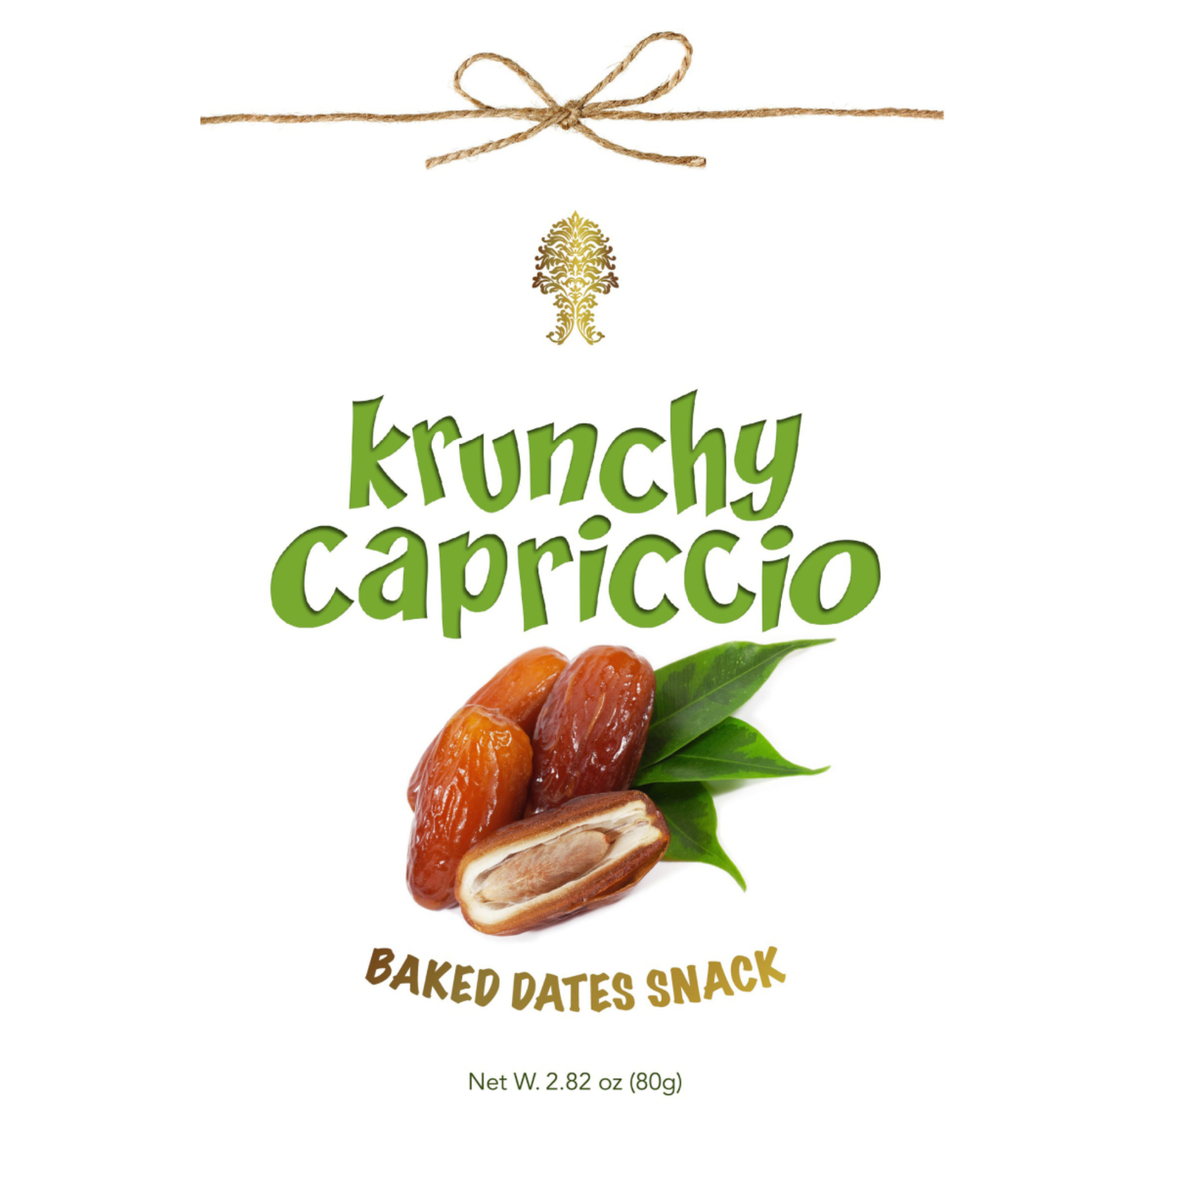 Krunchy Capriccio Baked Dates Snack 80g